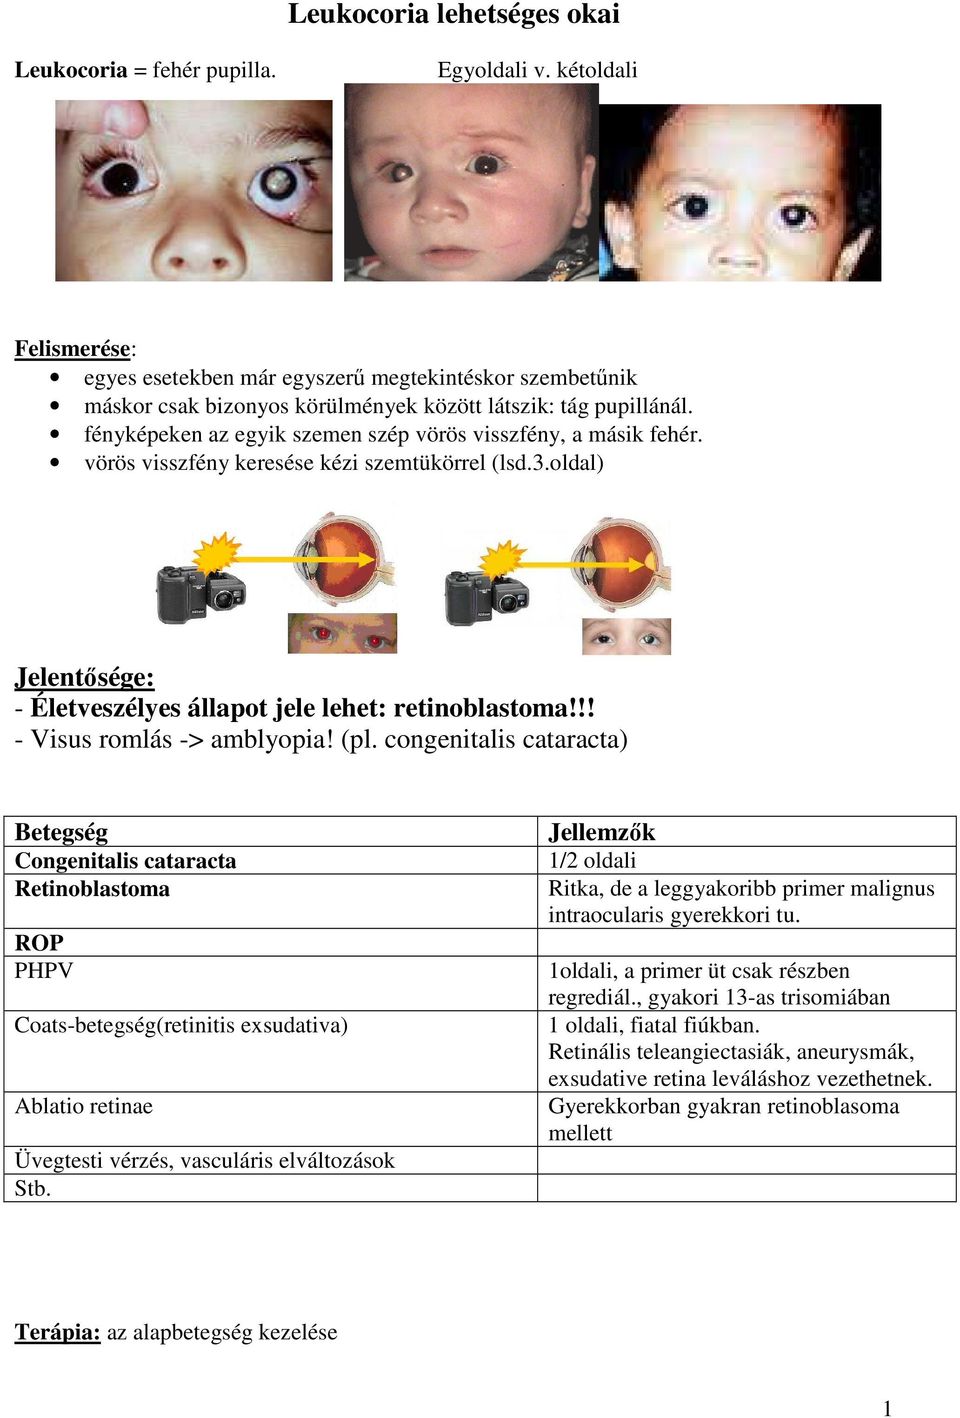 fényképeken az egyik szemen szép vörös visszfény, a másik fehér. vörös visszfény keresése kézi szemtükörrel (lsd.3.oldal) Jelentősége: - Életveszélyes állapot jele lehet: retinoblastoma!